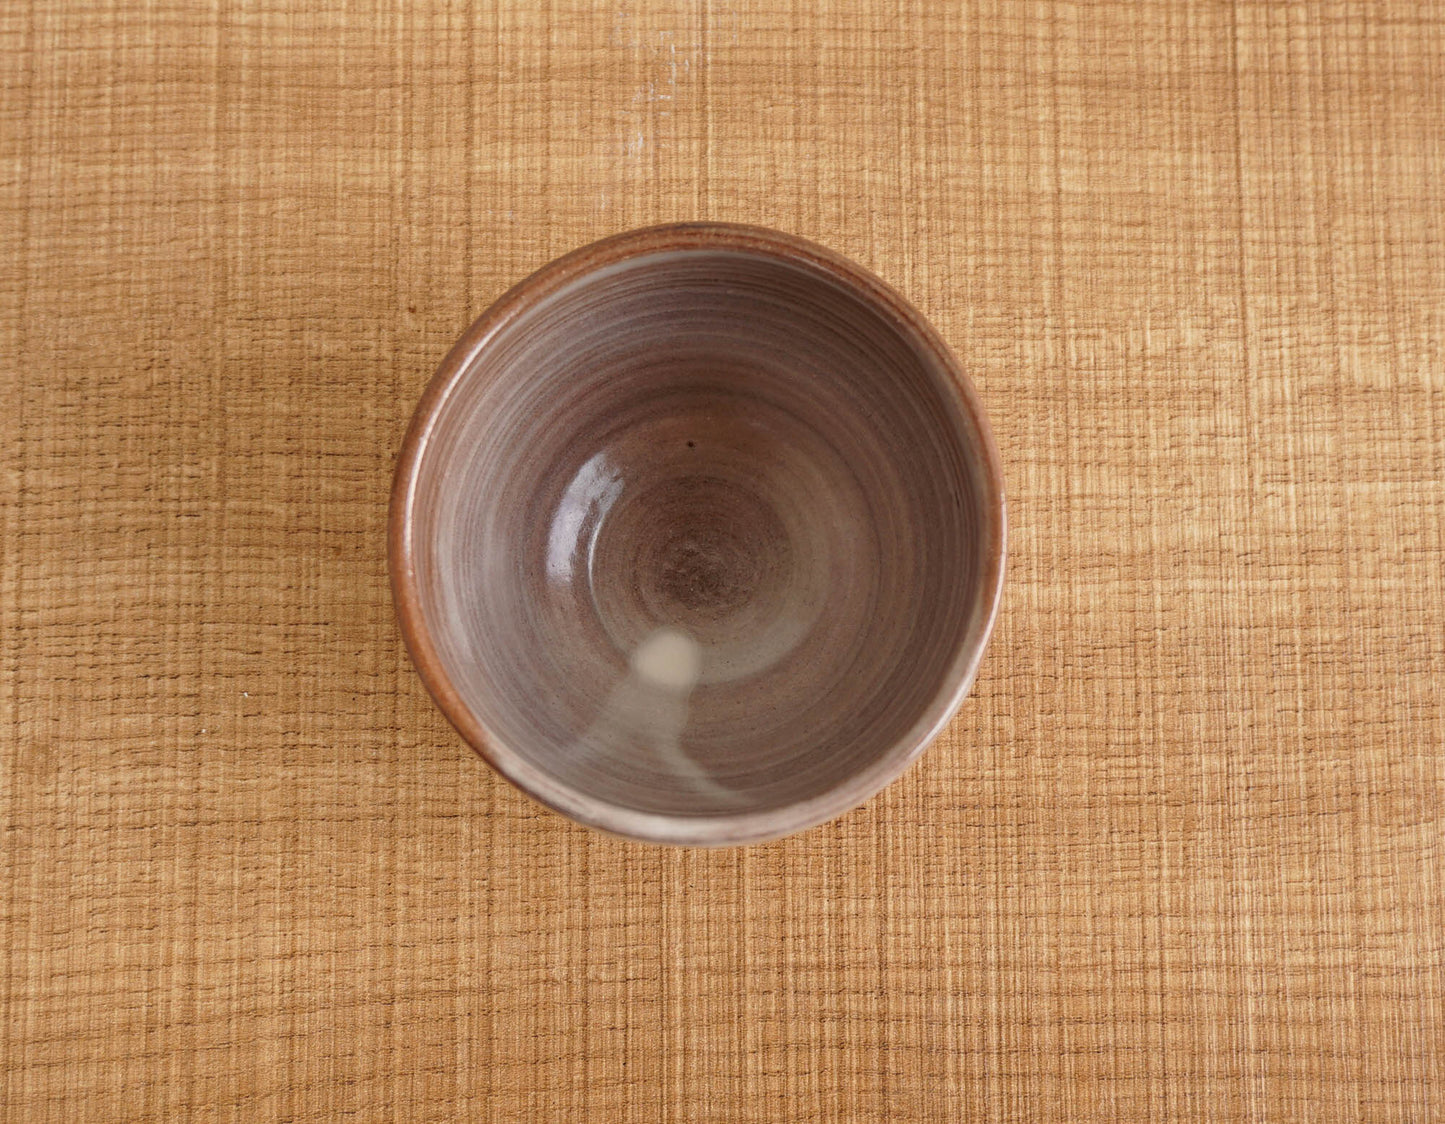 Izumo Cup